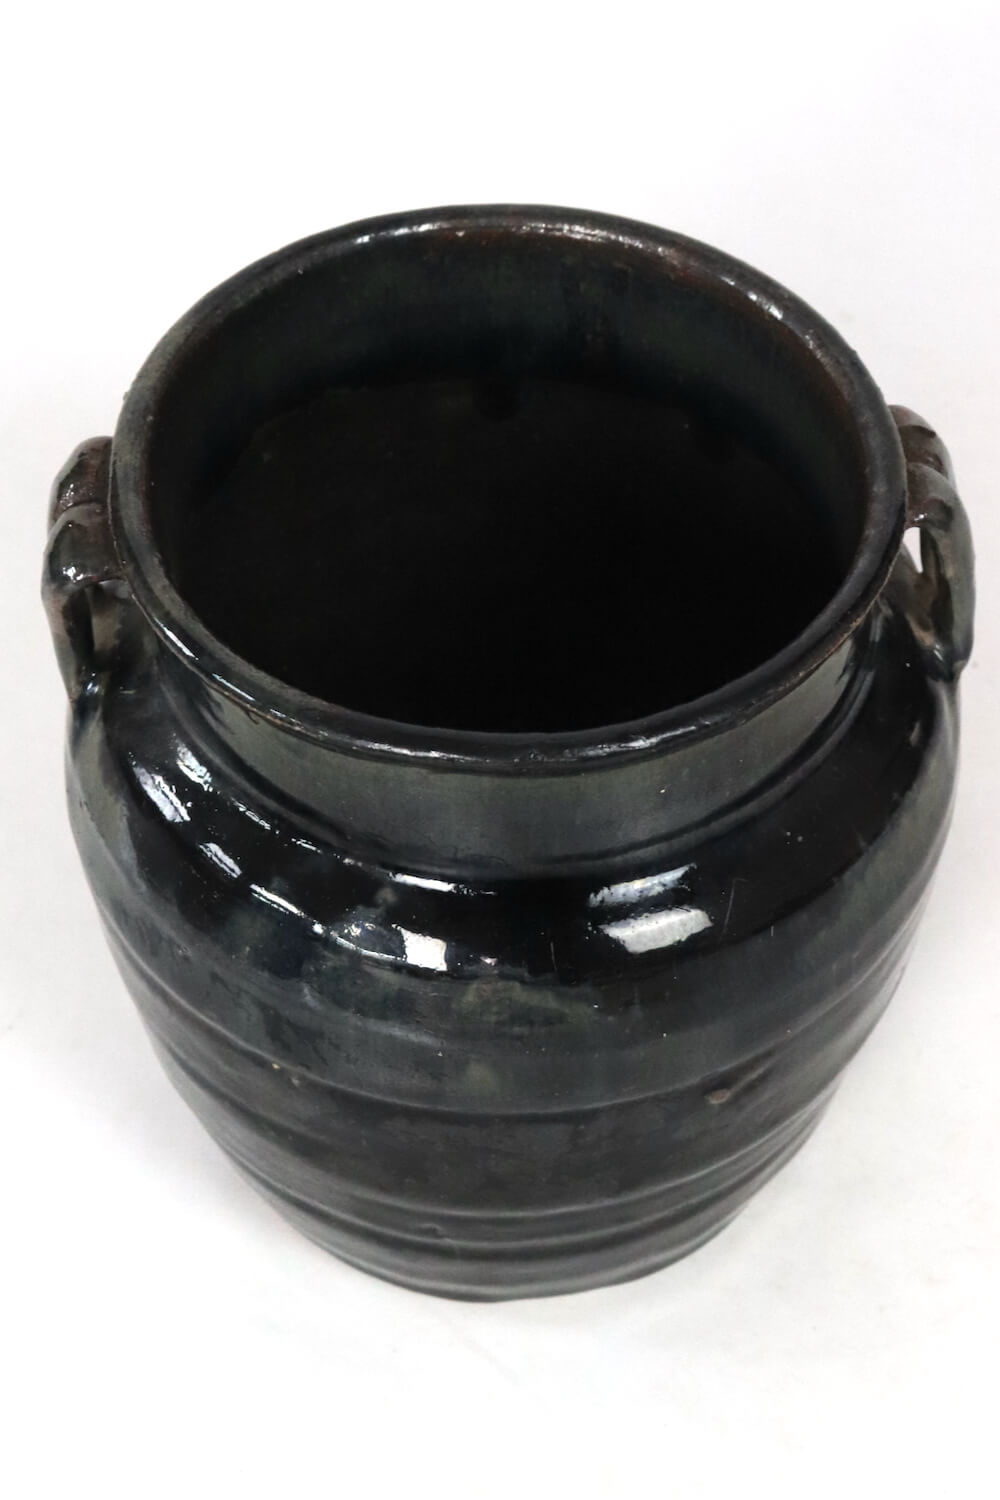 Schwarzer Keramik Topf antik China,19xø18